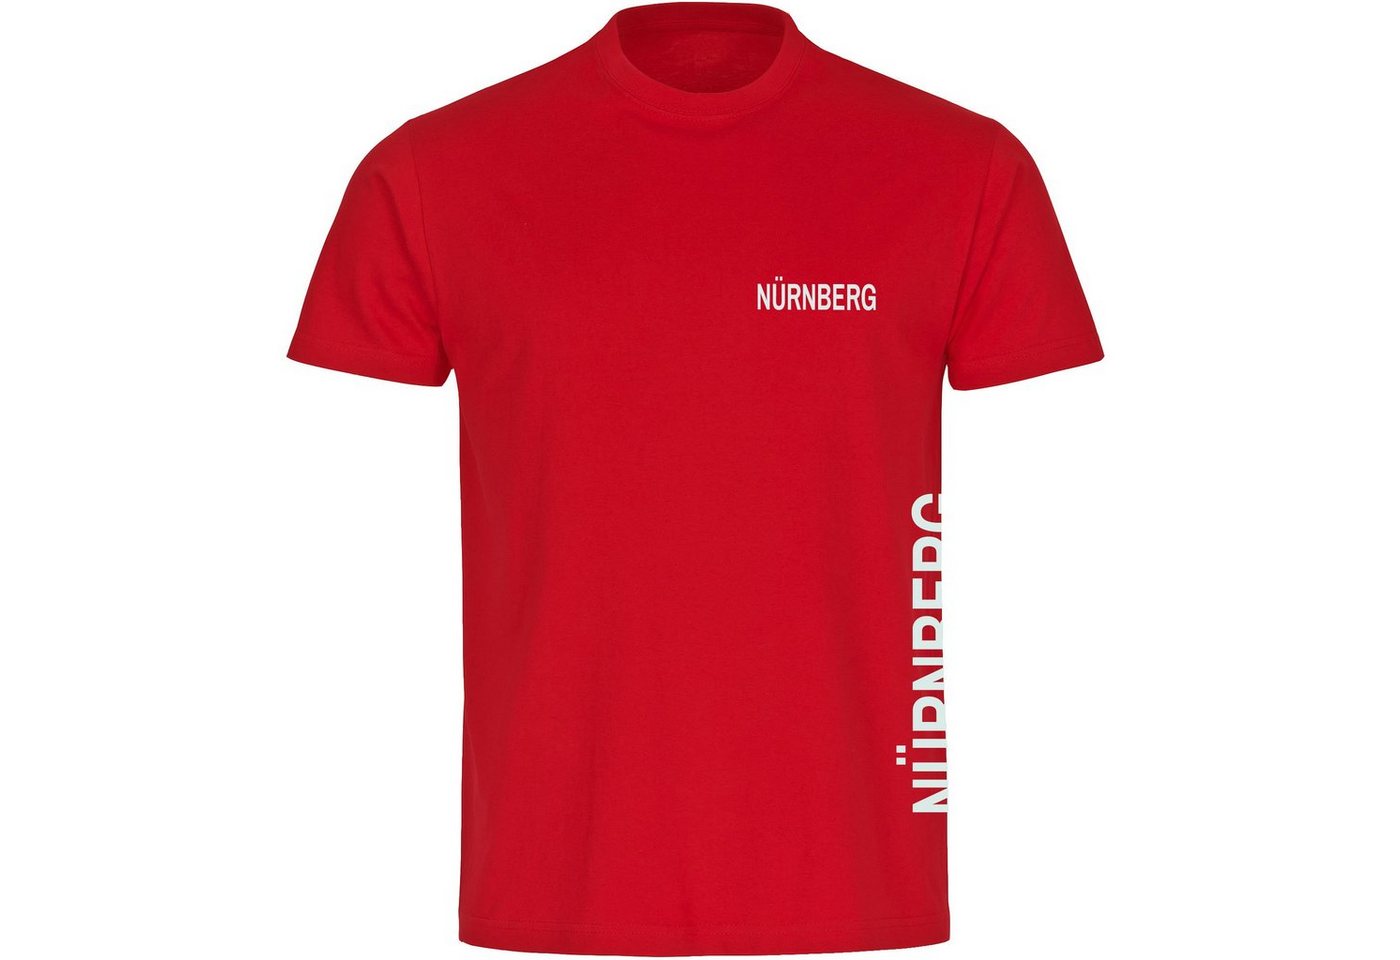 multifanshop T-Shirt Herren Nürnberg - Brust & Seite - Männer von multifanshop